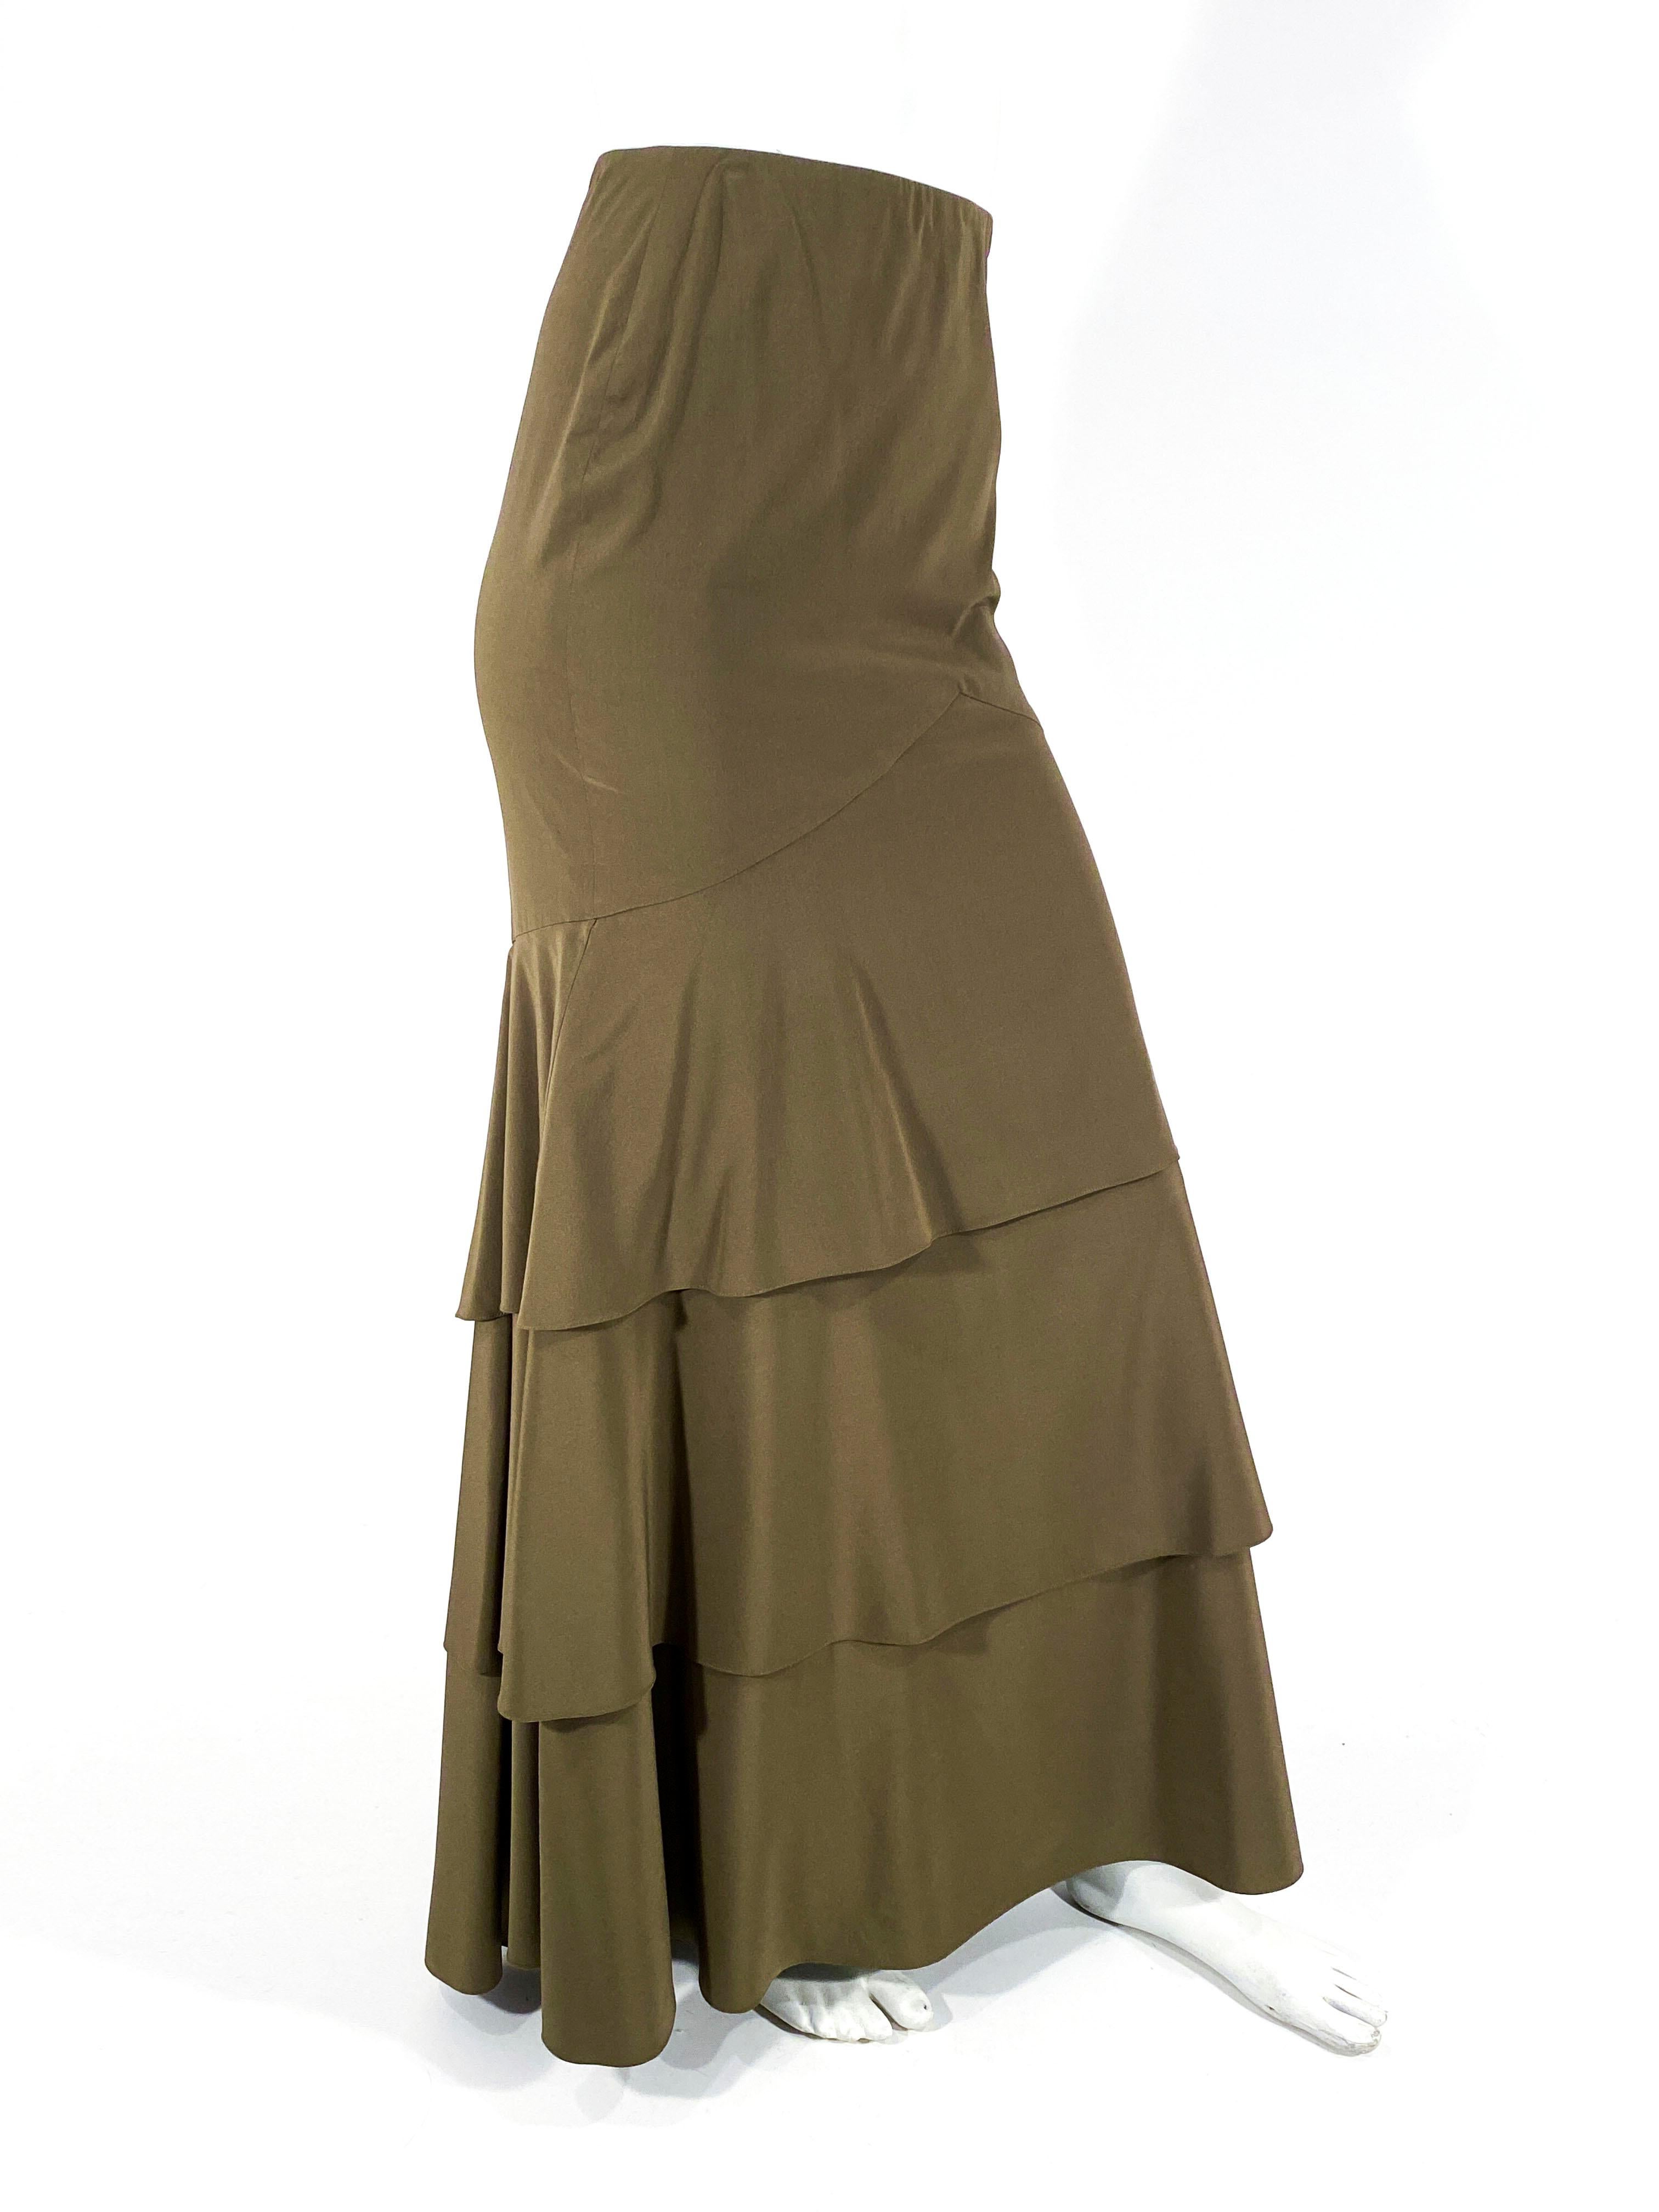 jupe sirène en soie marron/olive des années 1990 Carolina Herrera, avec plusieurs rangs à l'ourlet de la jupe. Le dos présente une queue de poisson allongée à partir de la hanche. La hanche est ajustée pour une silhouette flatteuse. Le dos a une